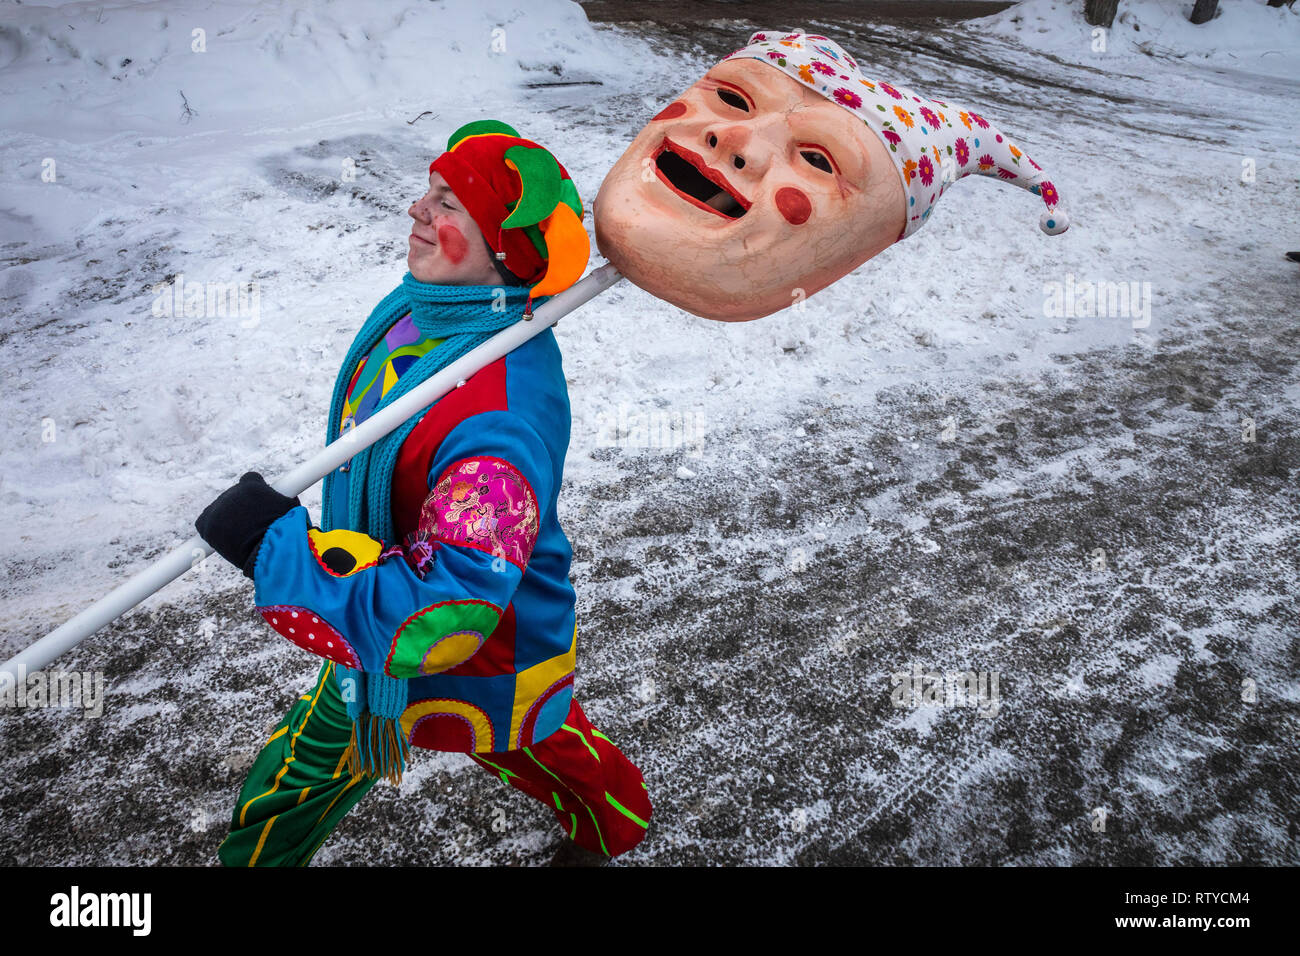 Street Performer in einem Anzug von petruschka Charakter ist auf der Straße  mit einer großen Maske während Maslenitsa carinval, Russland  Stockfotografie - Alamy